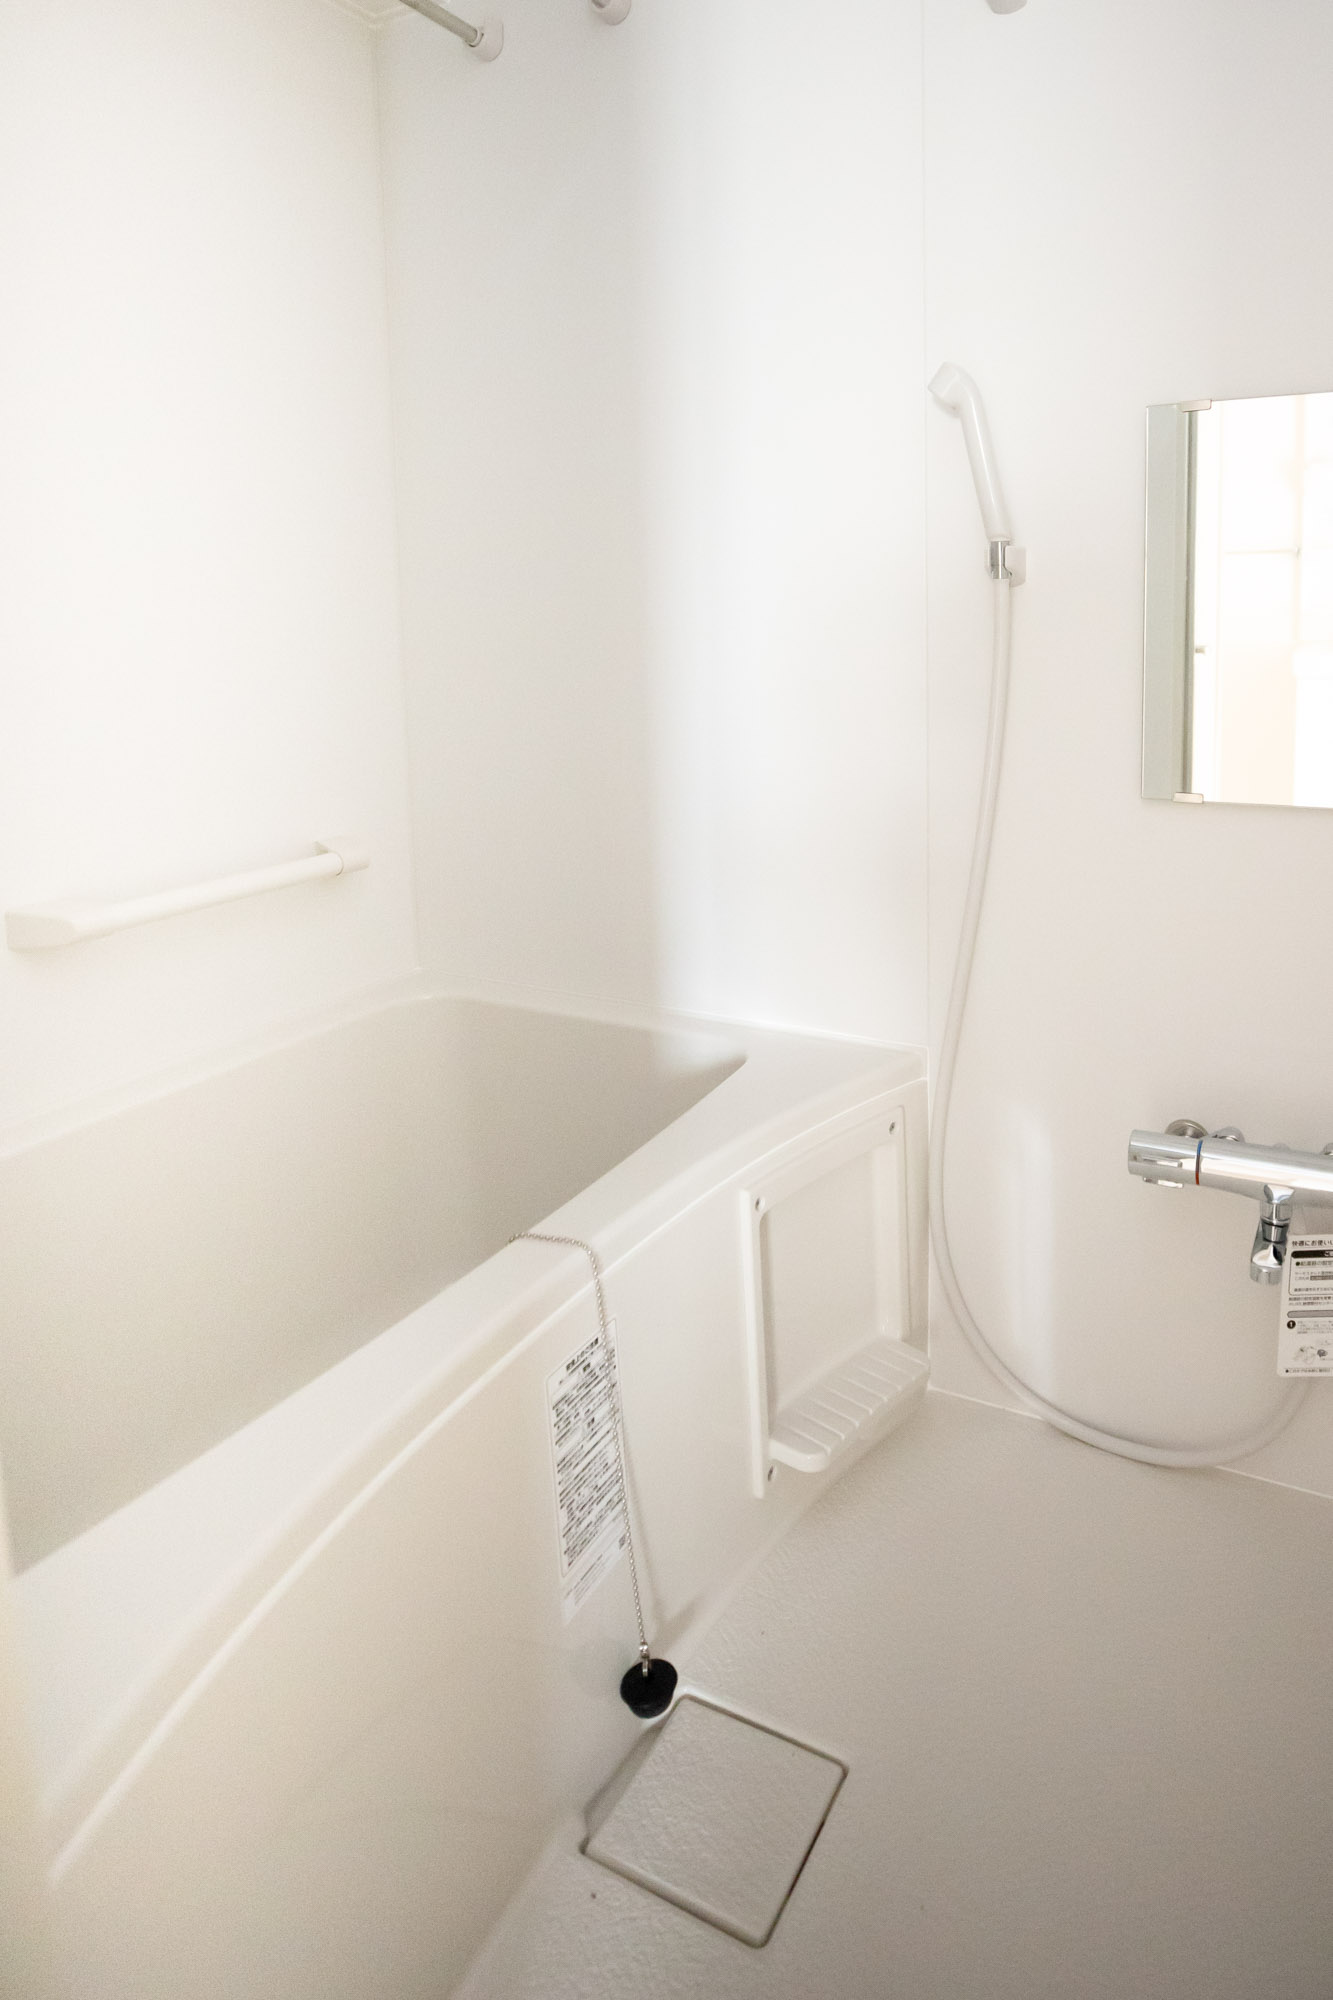 204号室のポイントはもうひとつ。こちらのお風呂です。団地のお風呂は、在来浴室といってタイル貼りのものが多いのですが、こちらのお部屋には壁と浴槽が一体のユニットバスを導入。タイル貼りのお風呂に比べて掃除がしやすく、冬も温かいのが特徴です。